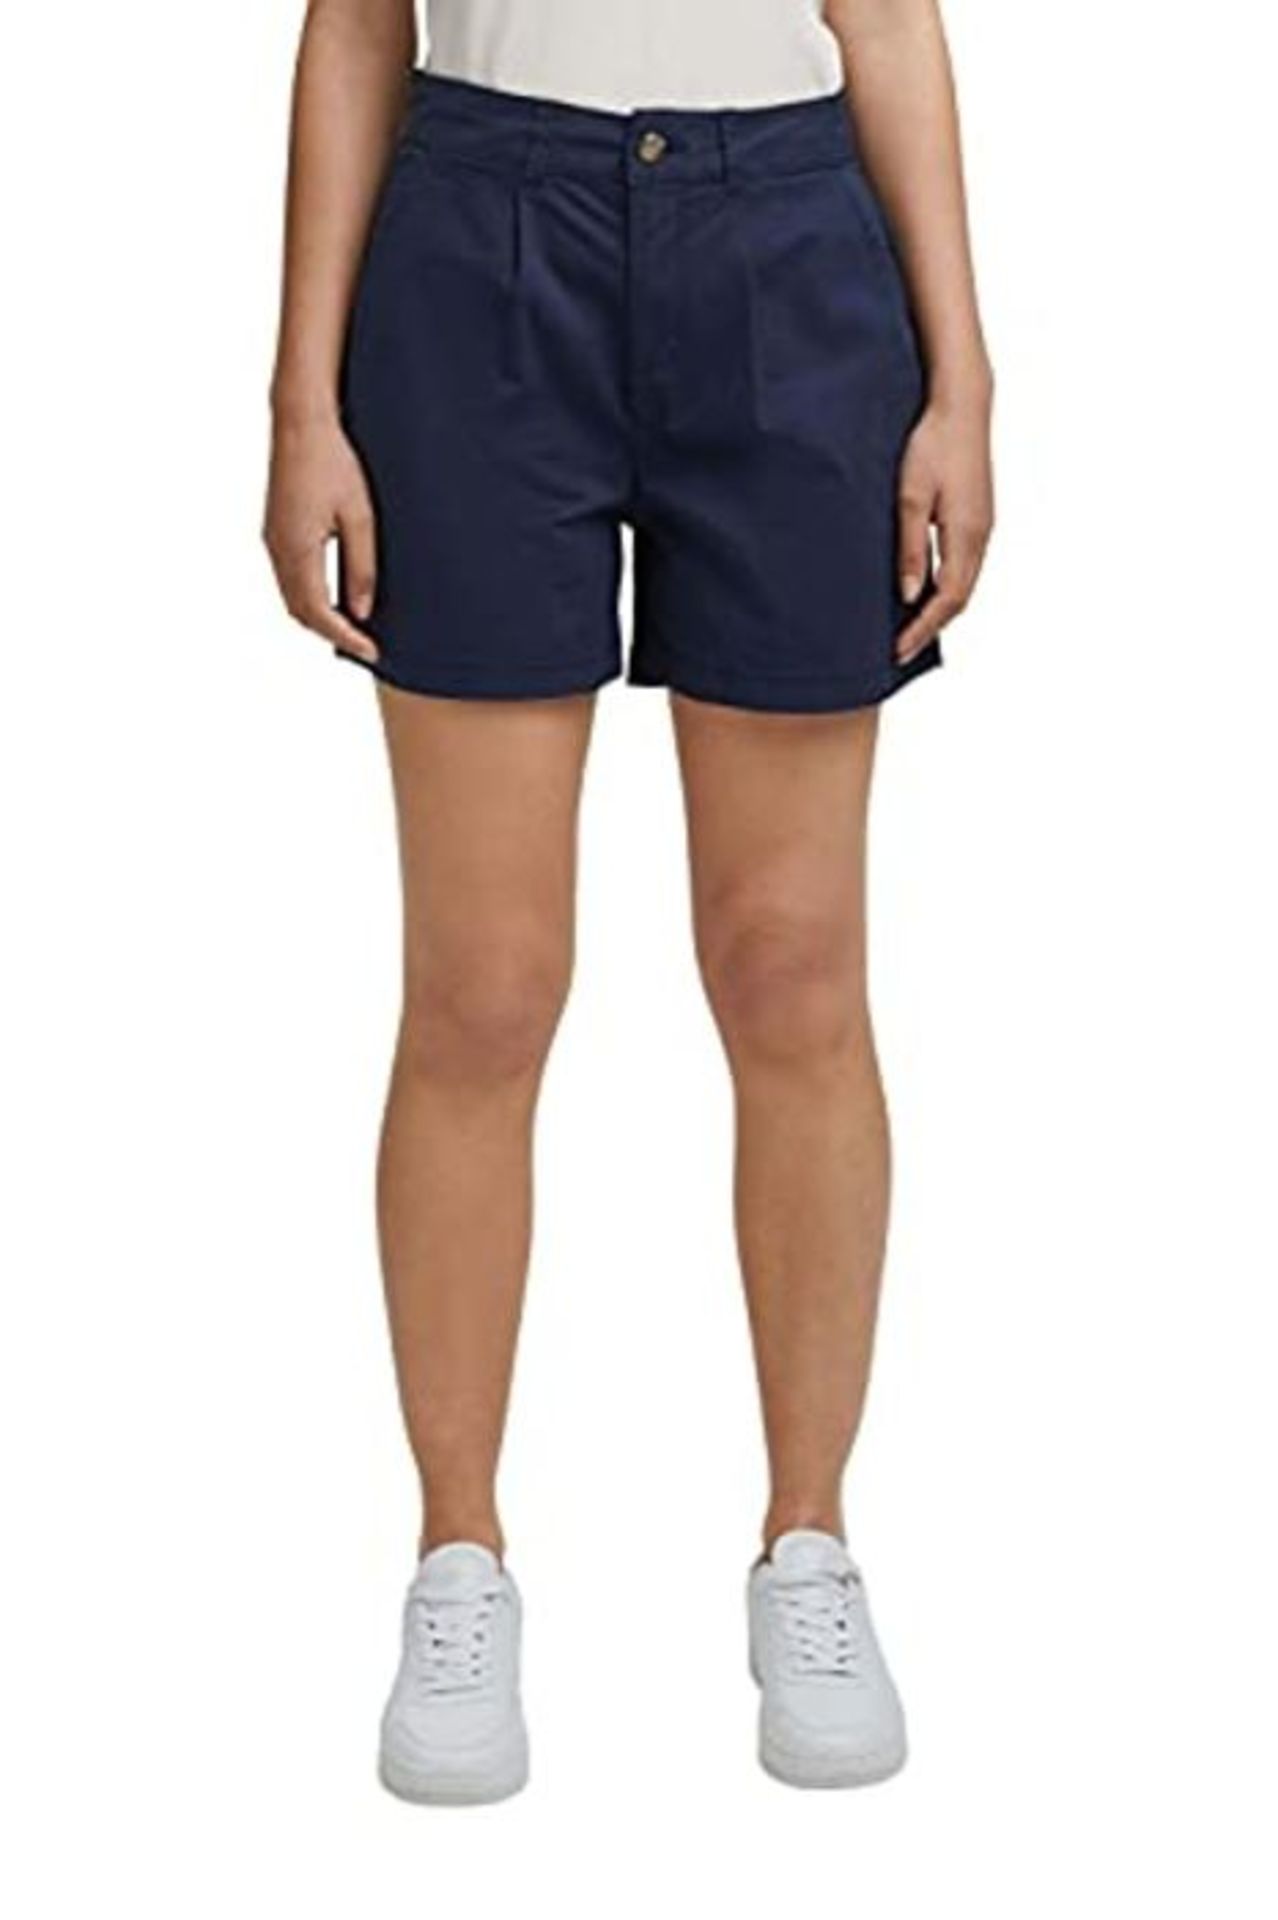 ESPRIT Women's 051EE1C304 Shorts, 400/Navy, 34